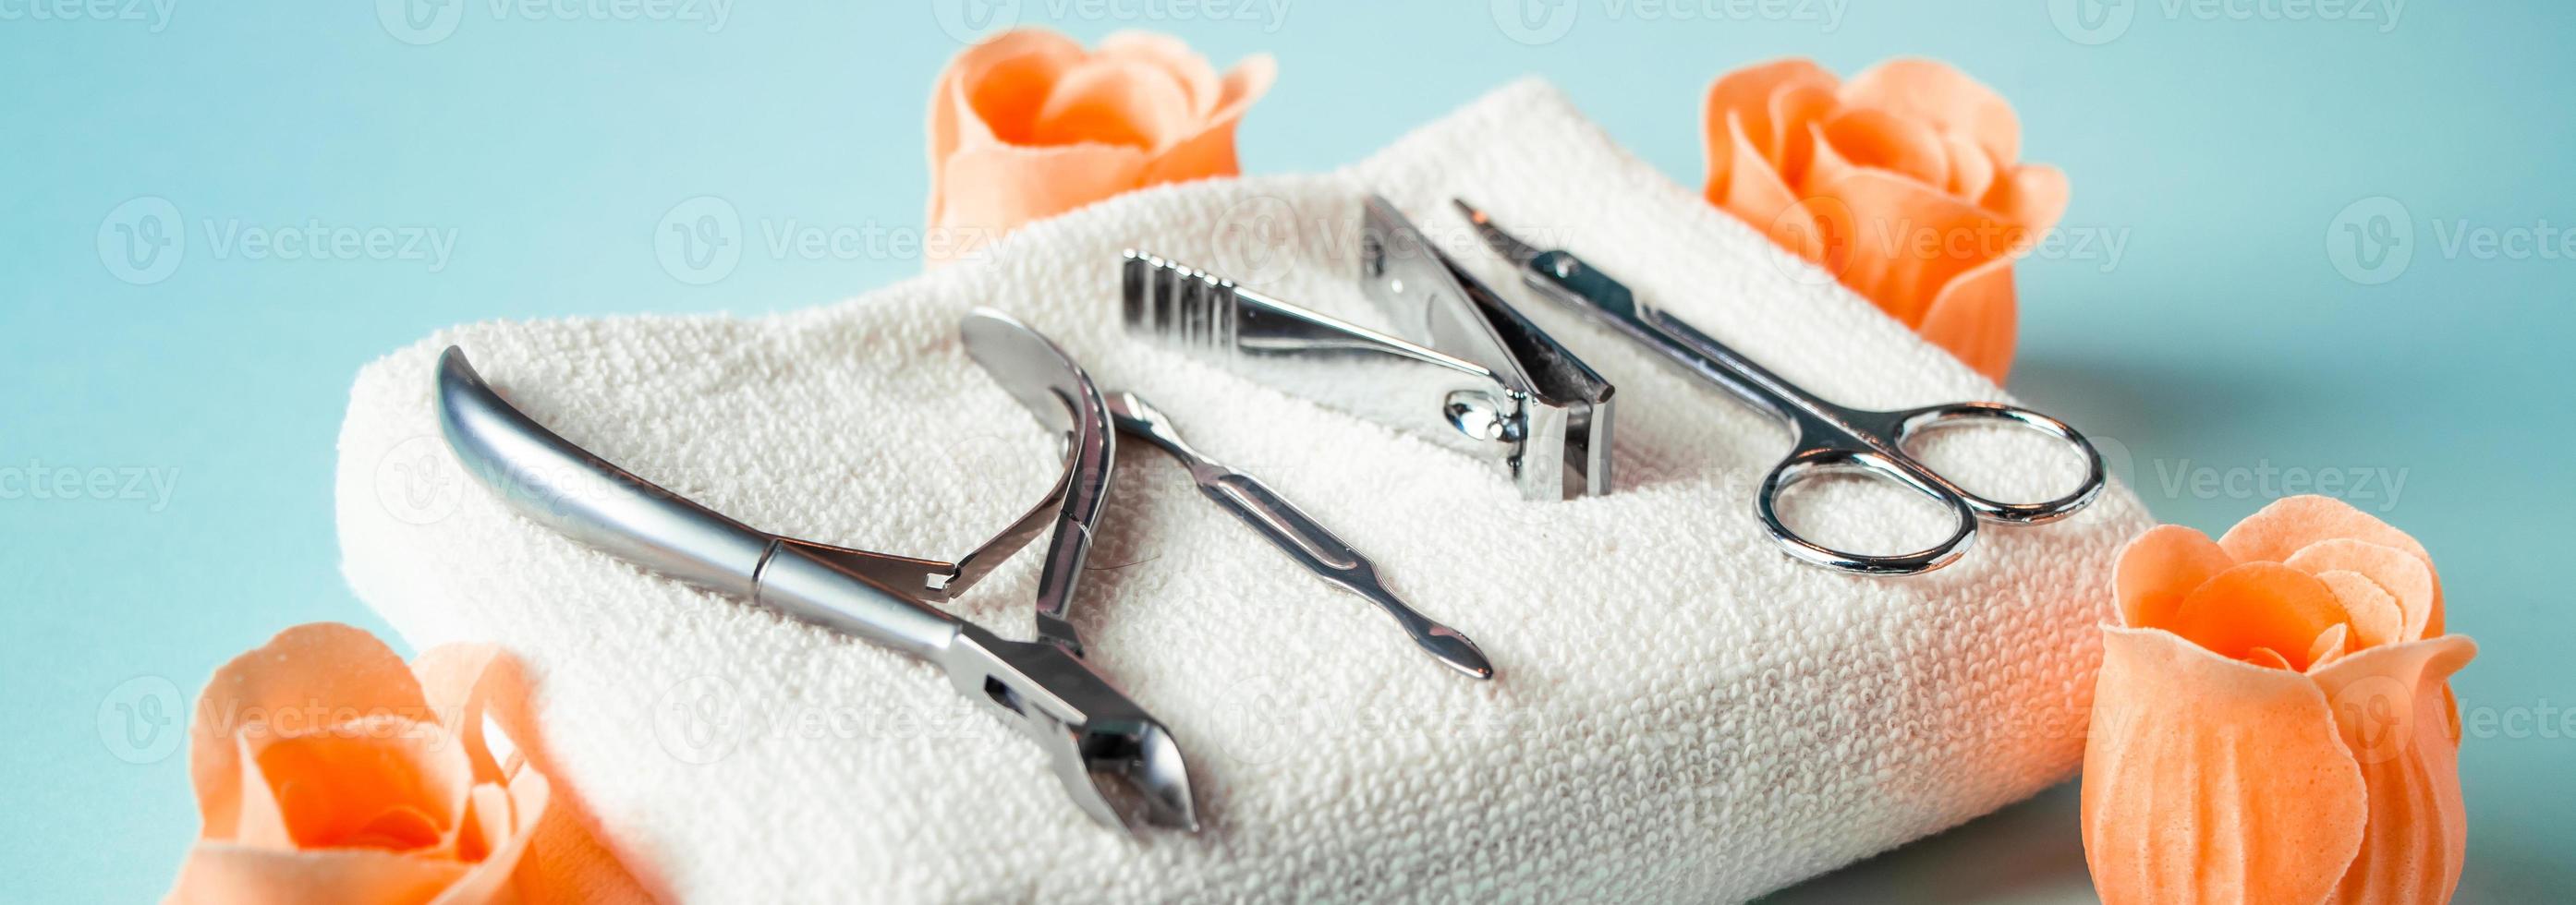 Werkzeuge für Maniküre und Nagelpflege auf blauem Hintergrund. foto